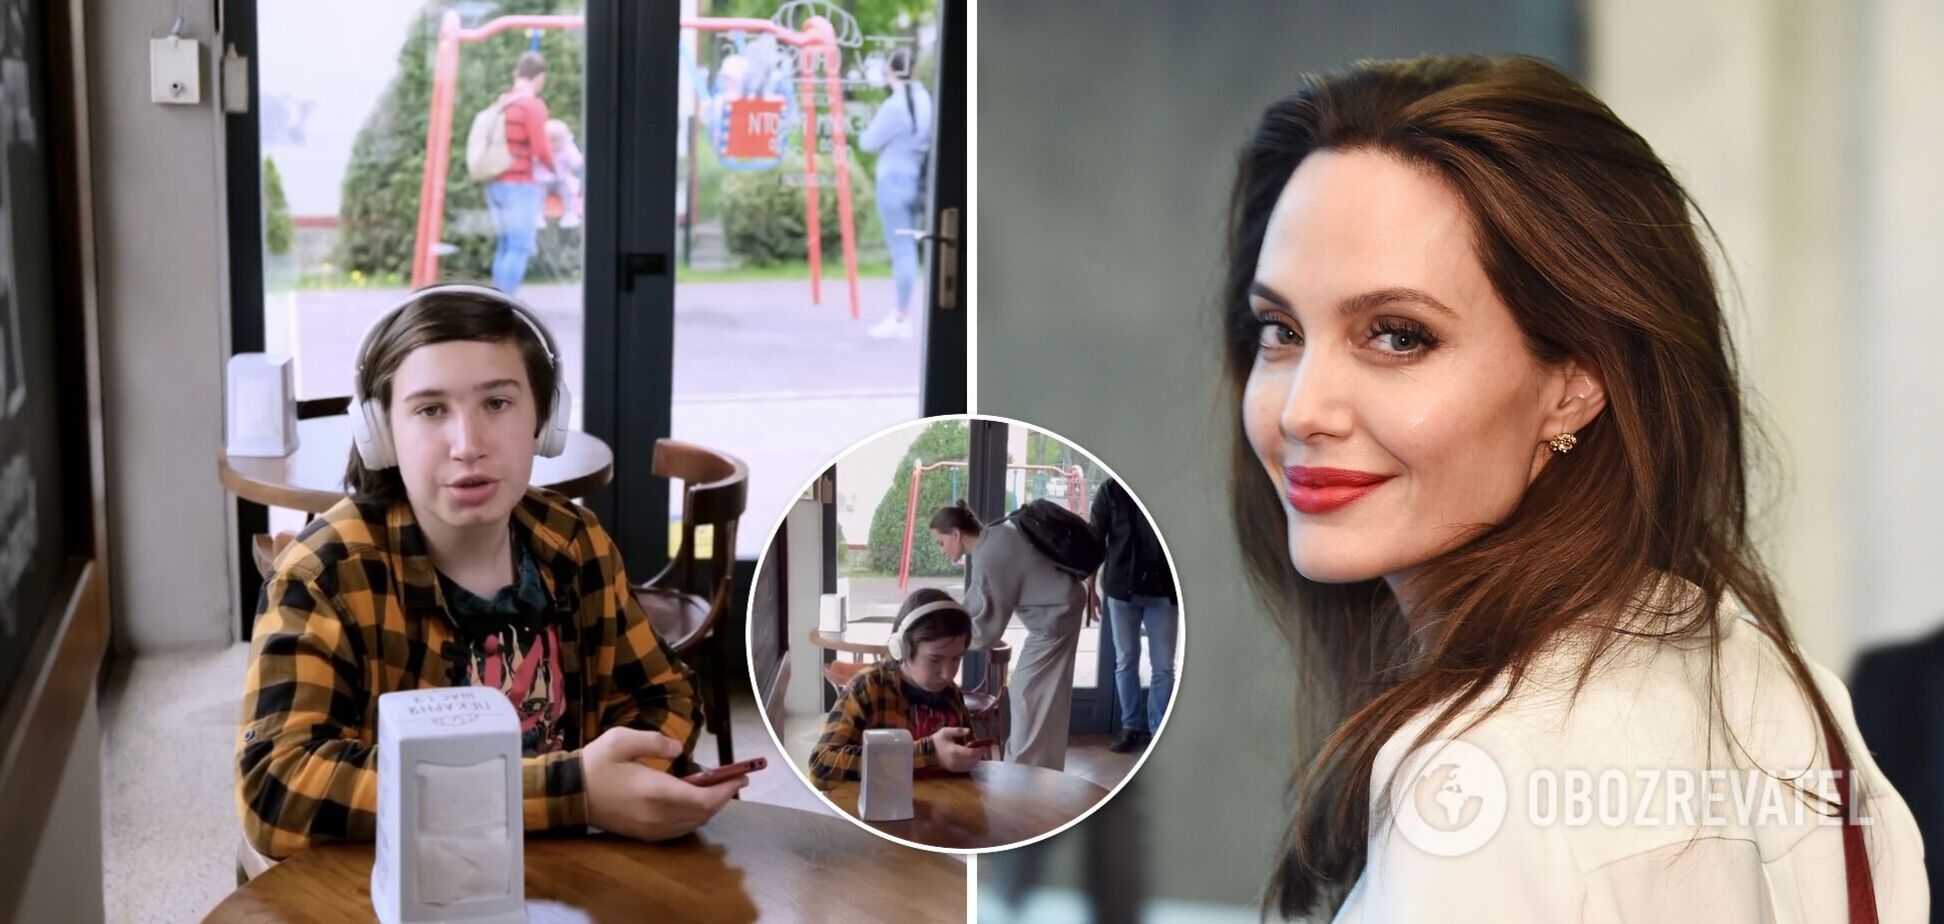 Підліток, який не помітив Джолі у львівській кав'ярні, скористався популярністю, щоб допомогти тваринам